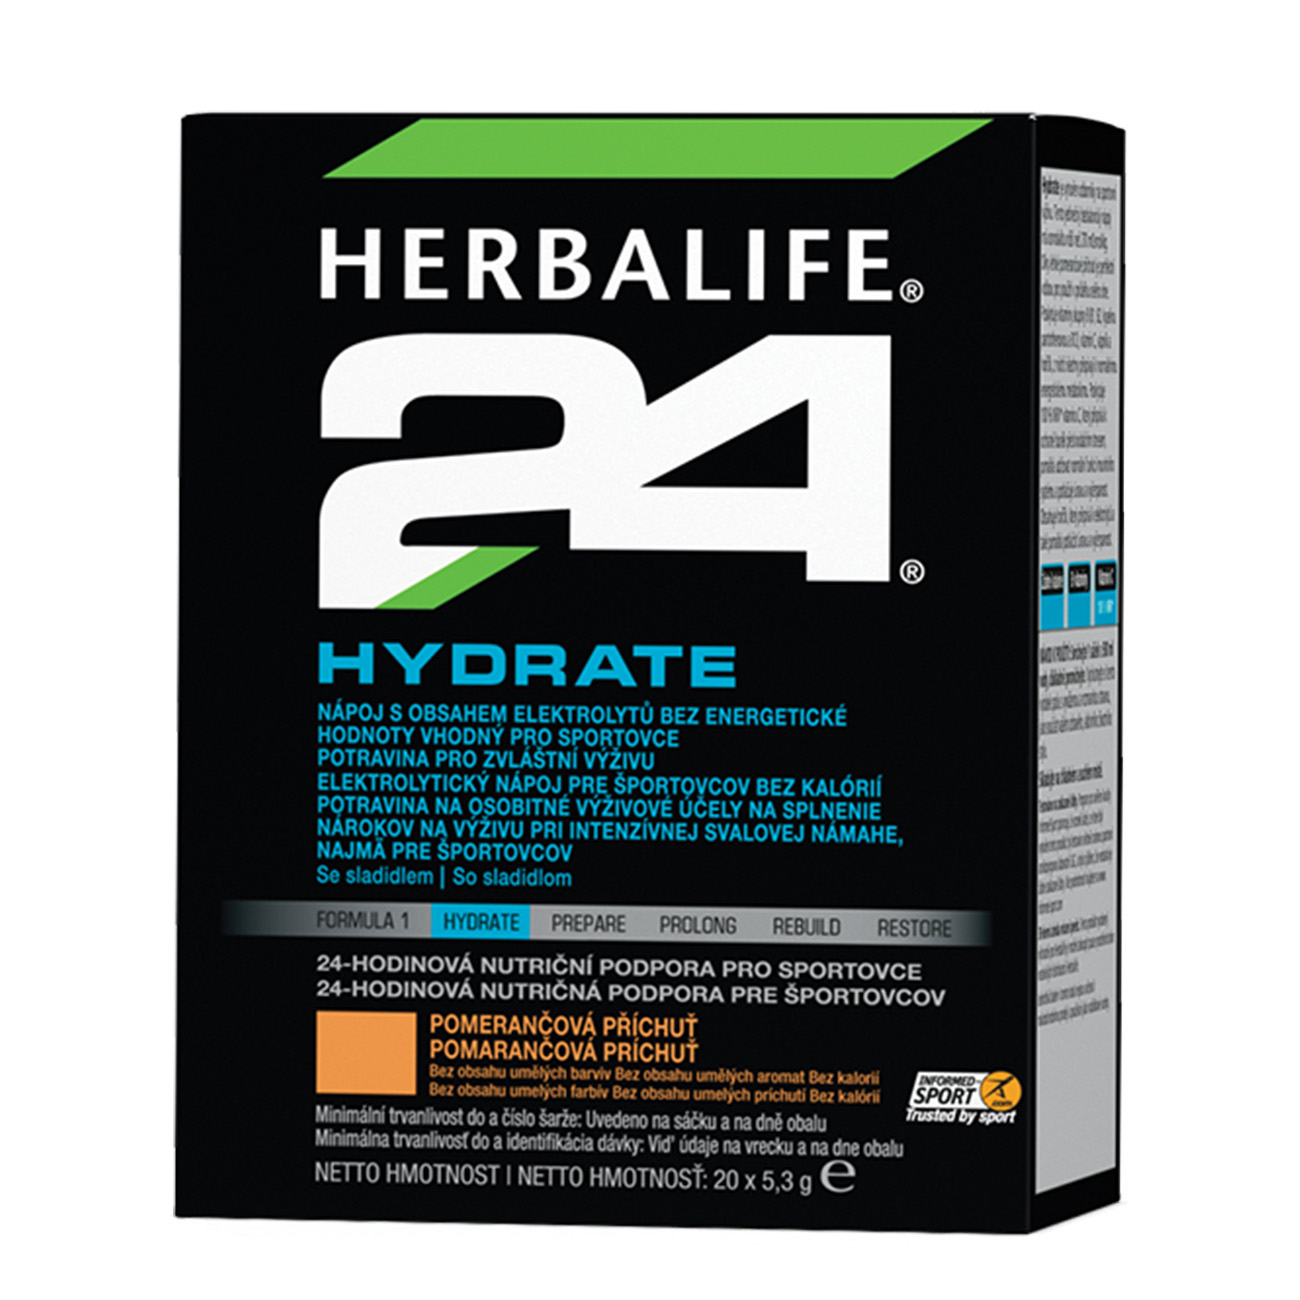 H24® Hydrate Elektrolytický nápoj s pomarančovou príchuťou.